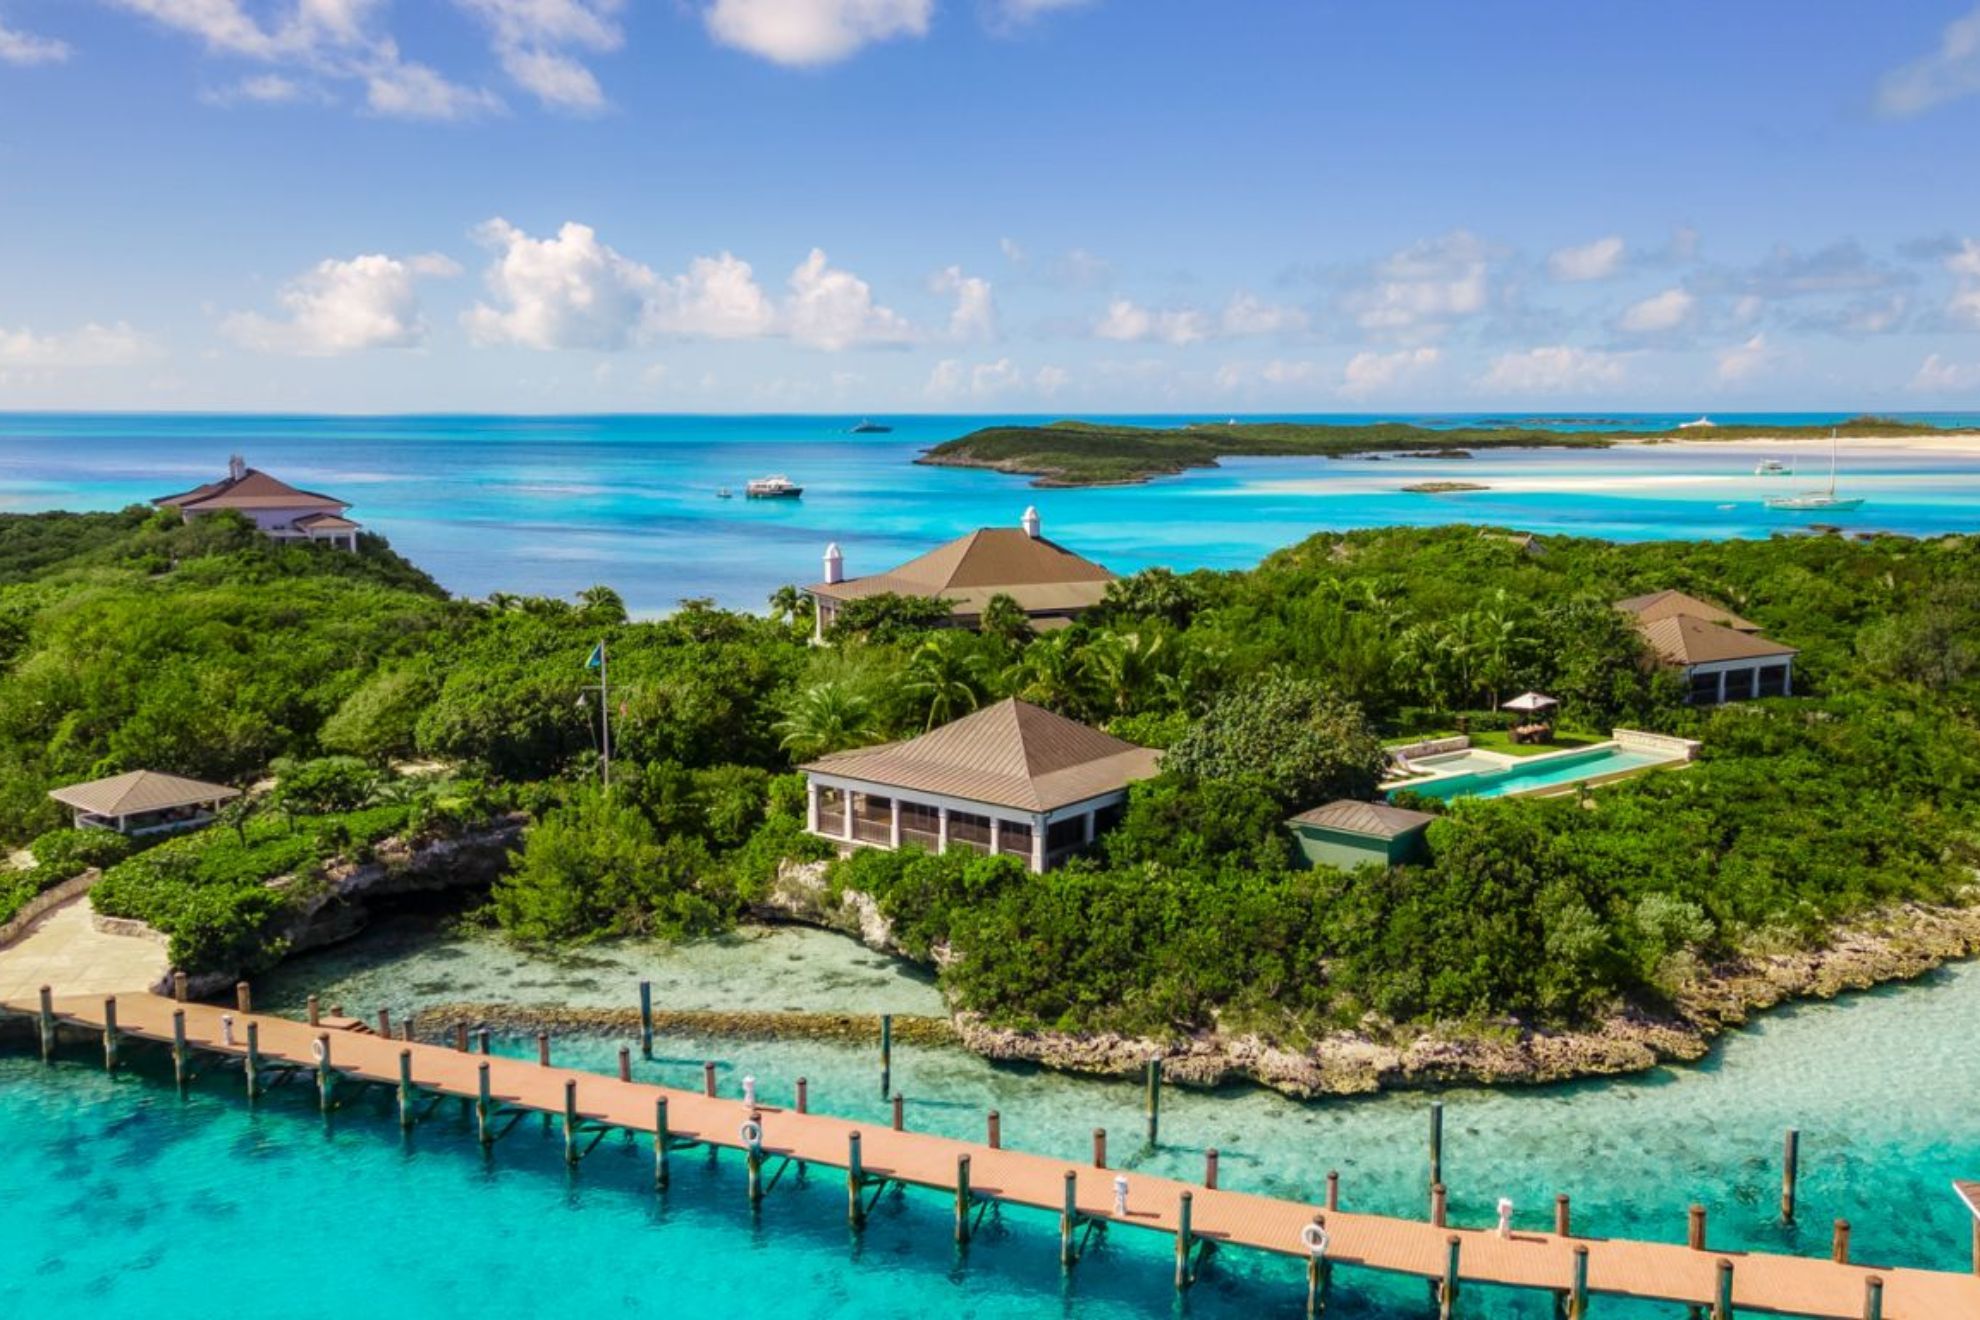 La isla Little Pipe Cay, de 'Piratas del Caribe' y 'James Bond', sale a la venta por 100 millones de dólares